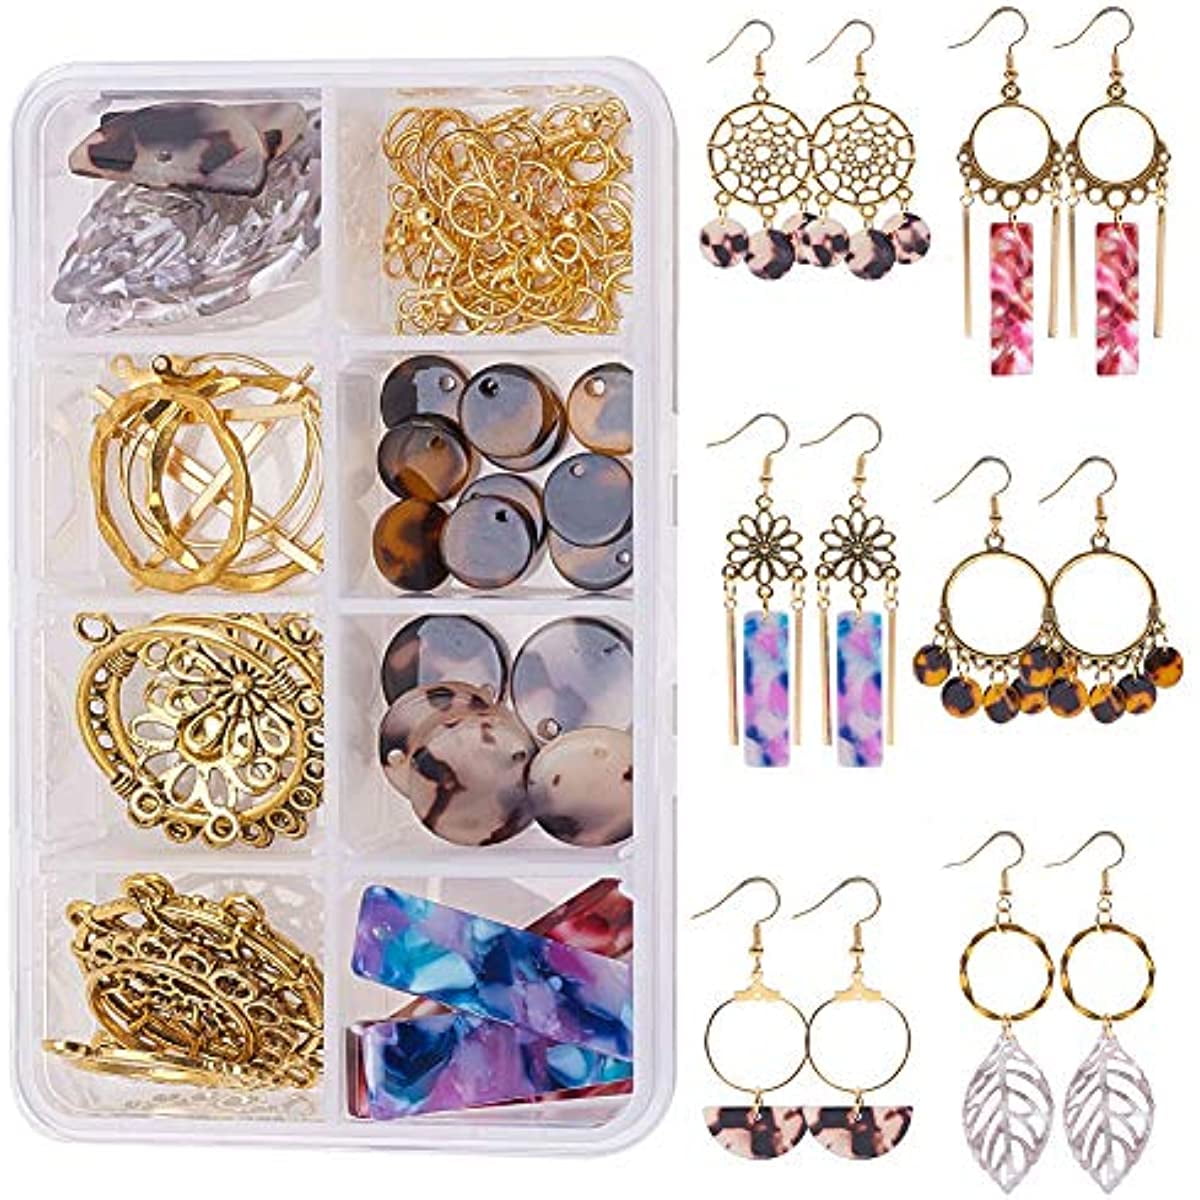 Abaodam 20pcs Earring Hook Dangle Earrings for Women DIY Earring Tools  Earring Making Kit Jewelry Findings for Making Jewelry Ear Jewelry Material